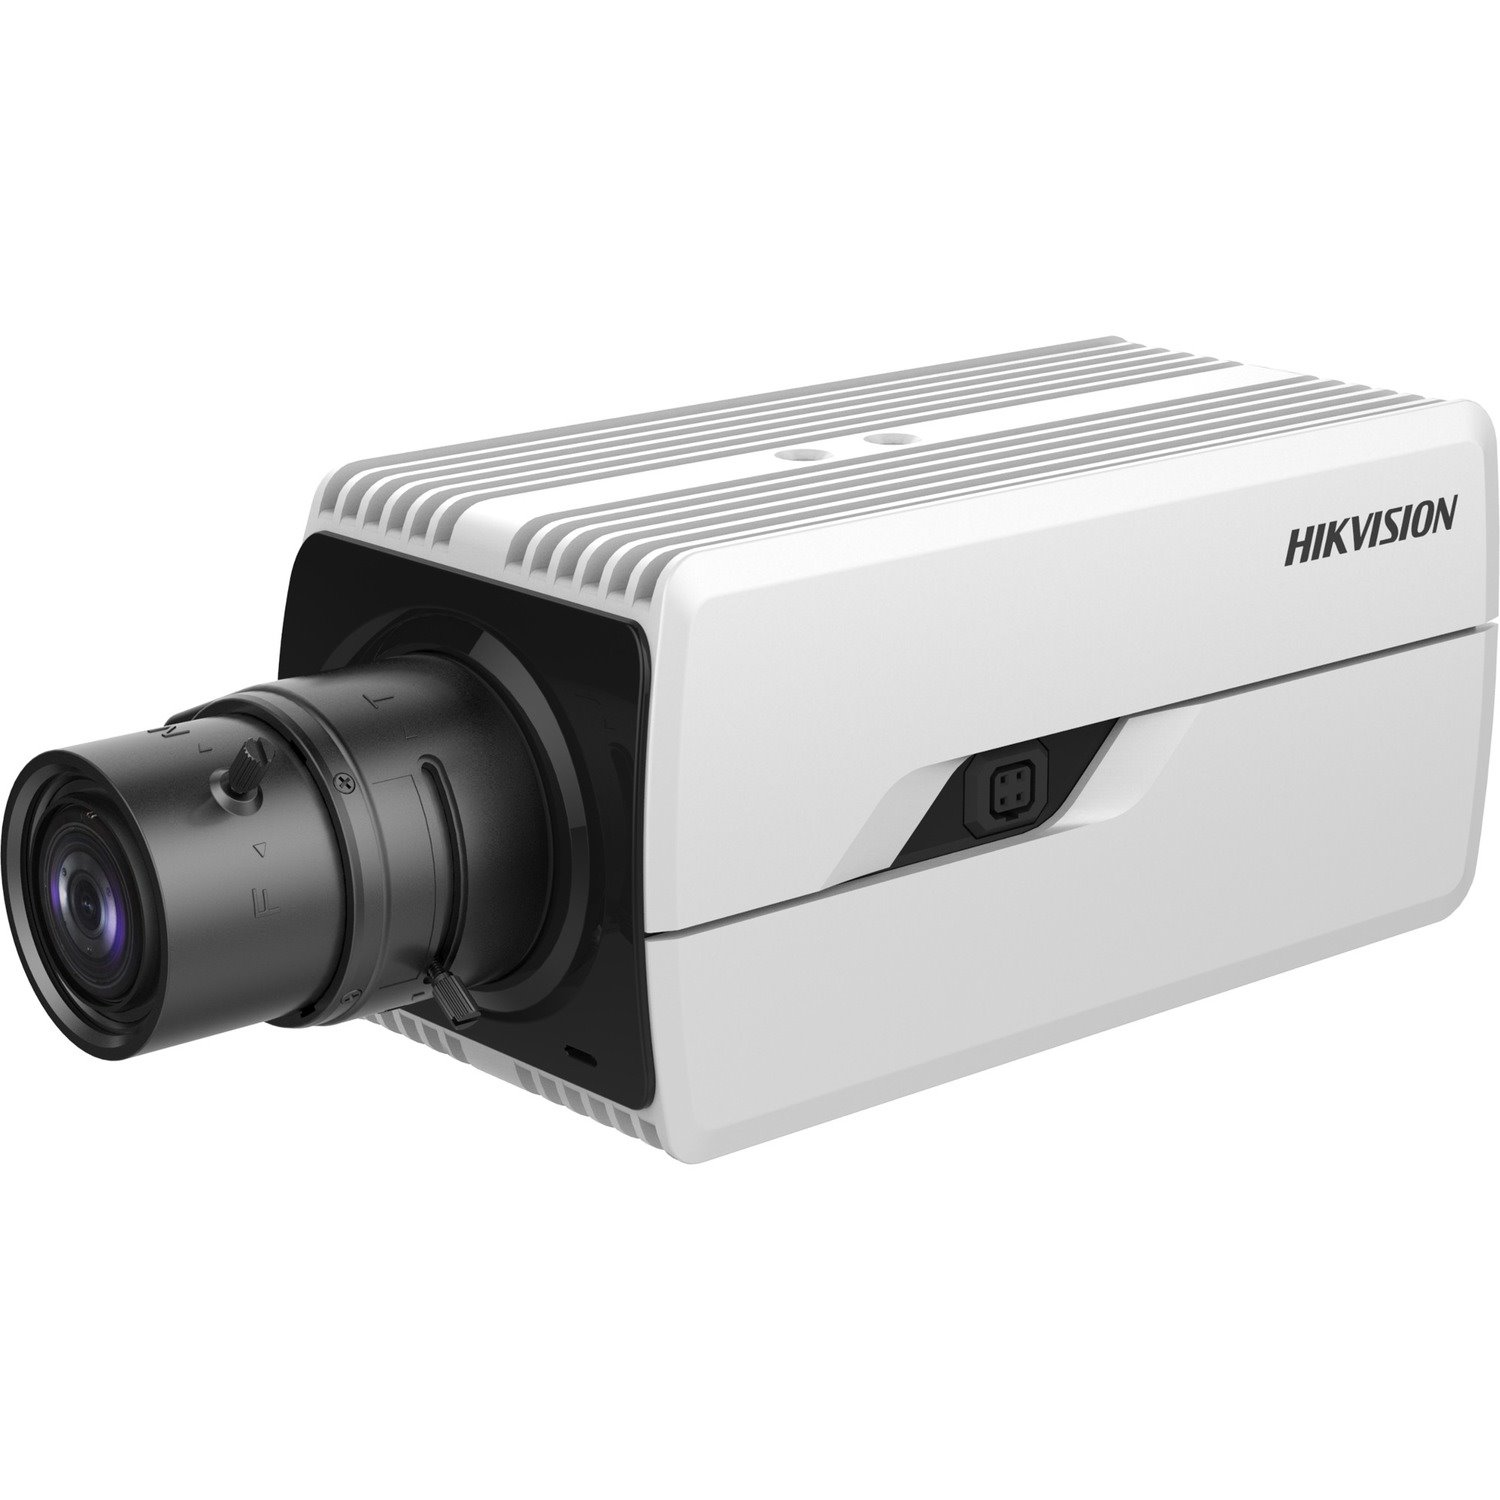 Hikvision DeepinView iDS-2CD7046G0-AP 4 Megapixel Indoor Network Camera - Color - Box